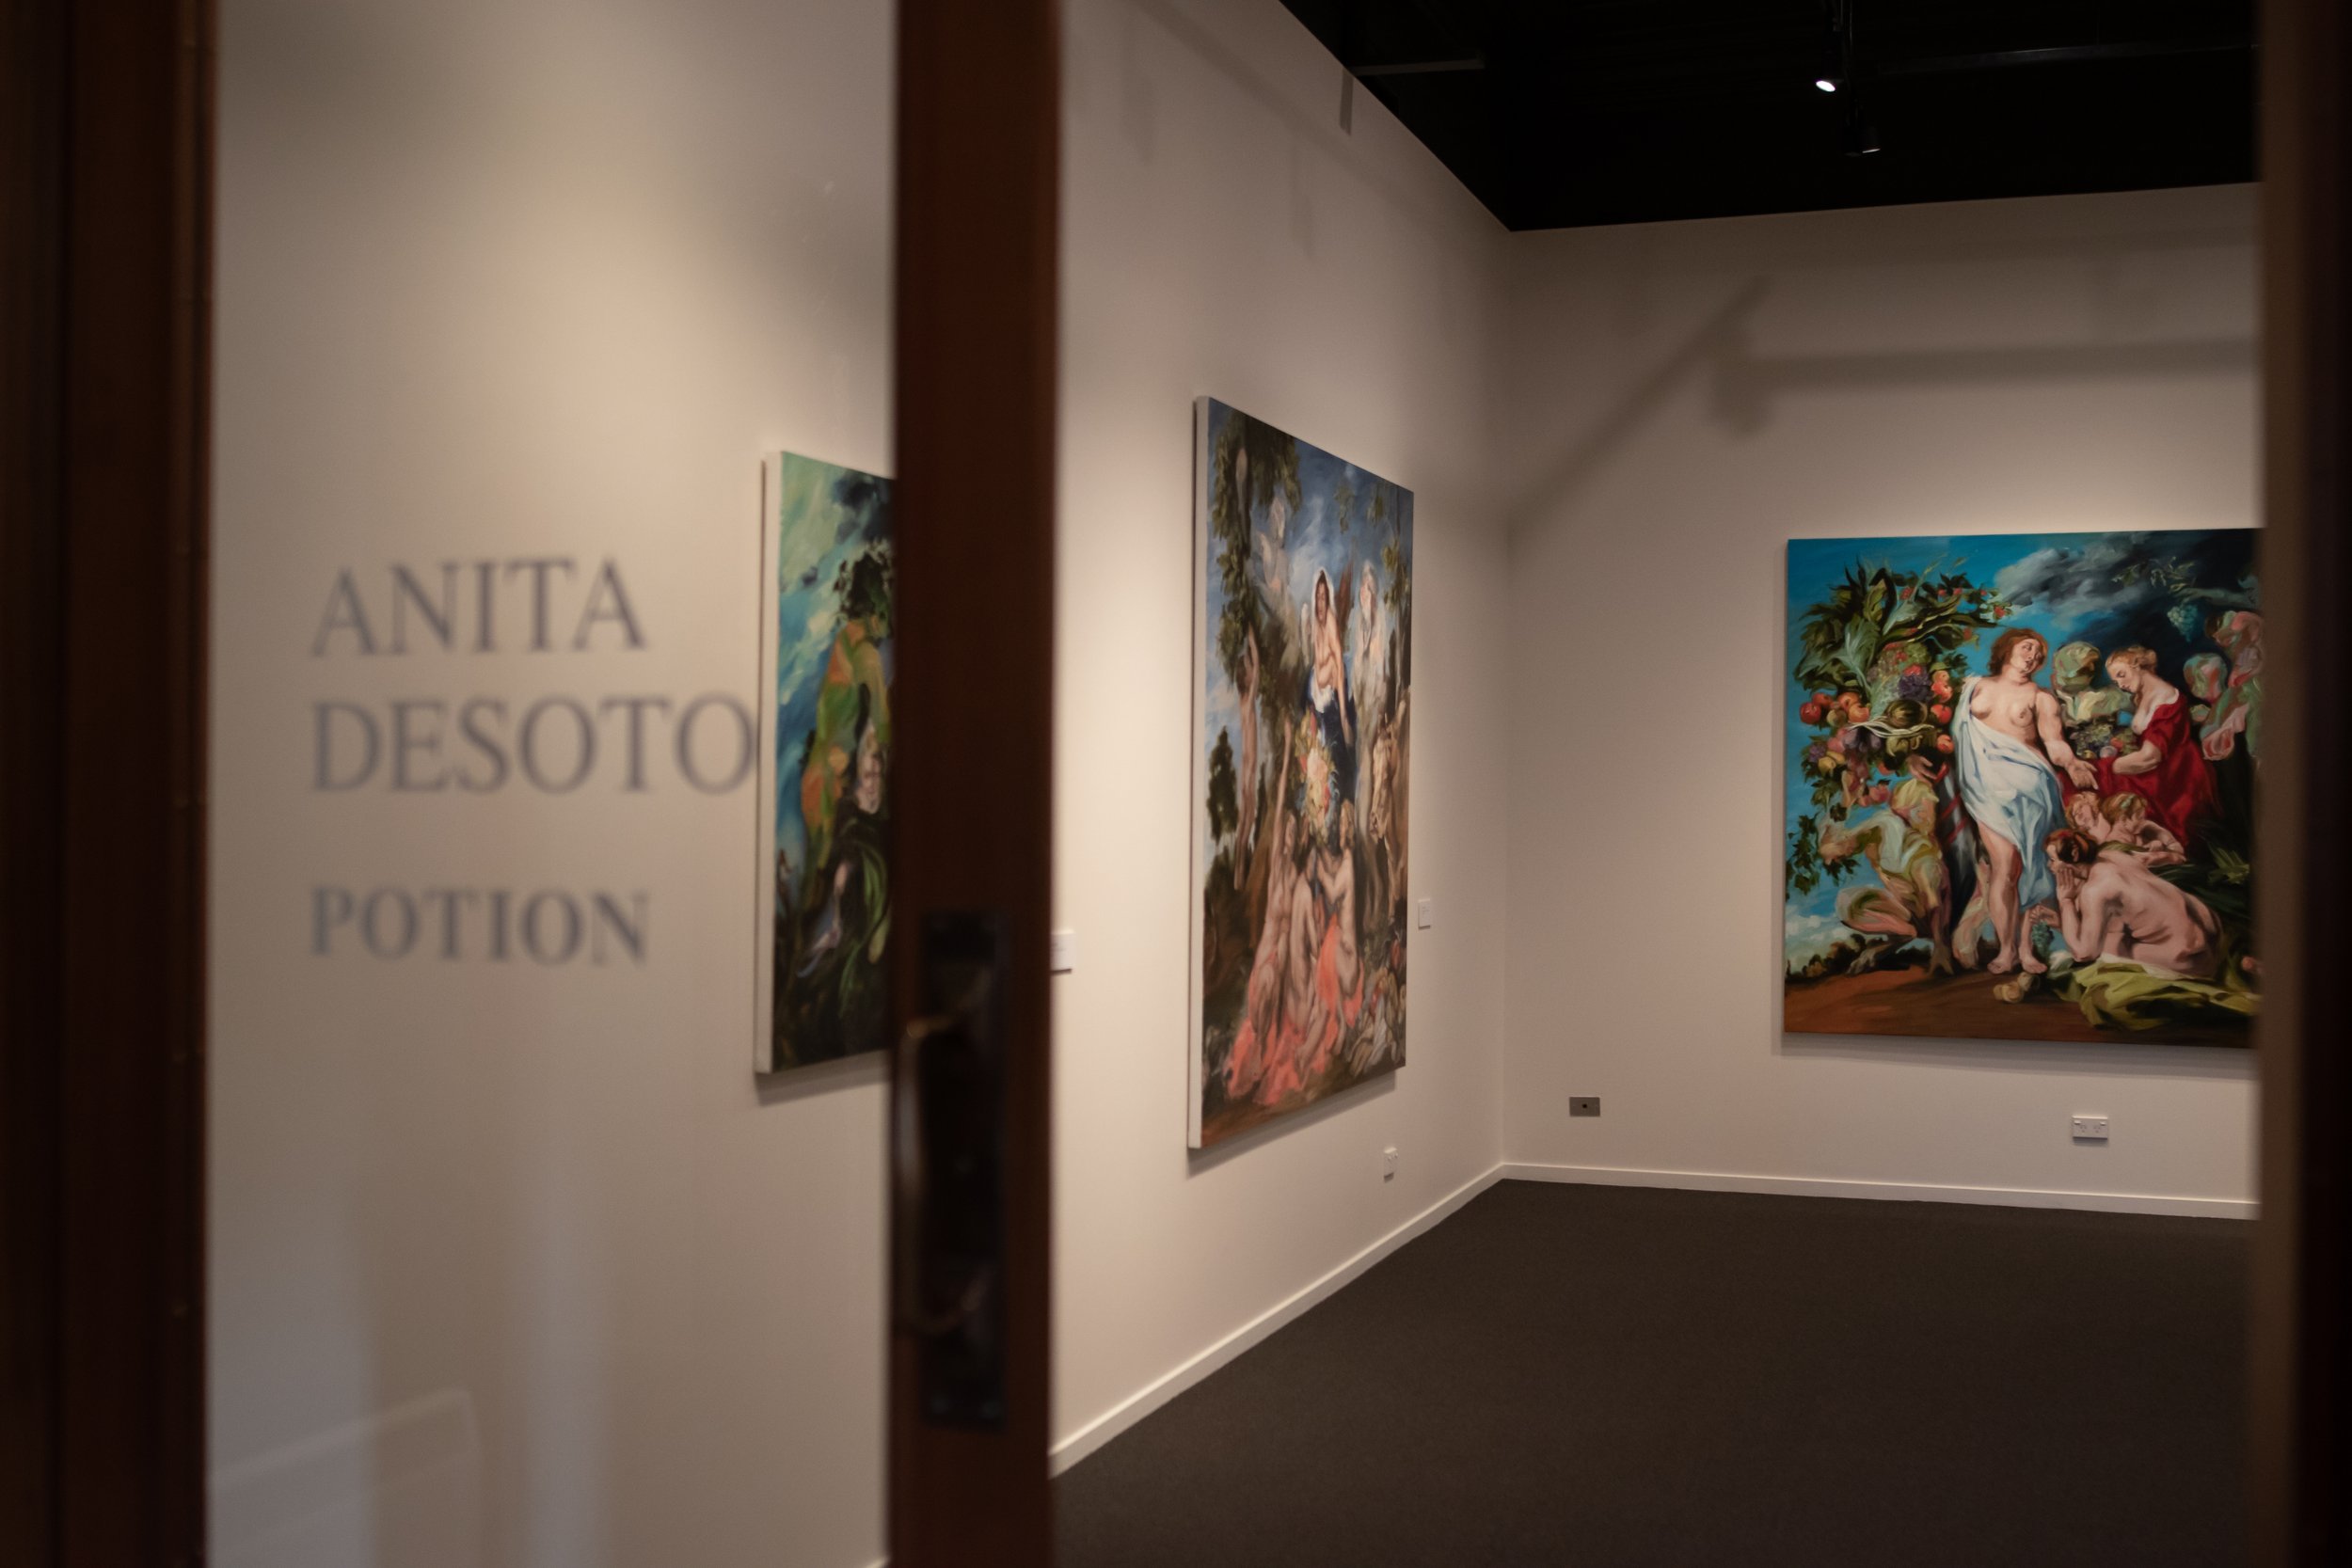 Anita DeSoto Potions Exhibition